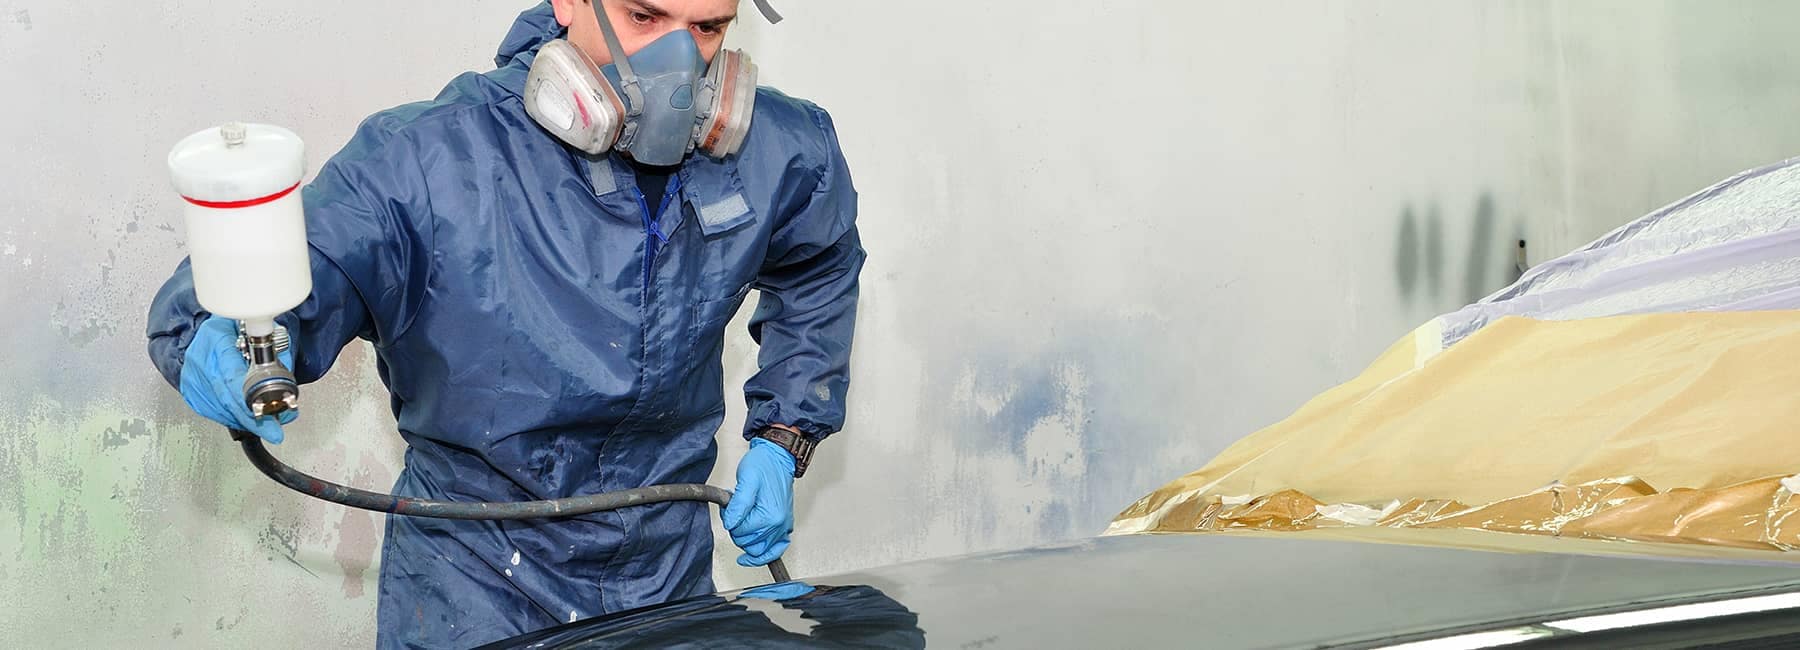 technician sprays new coat of paint on car